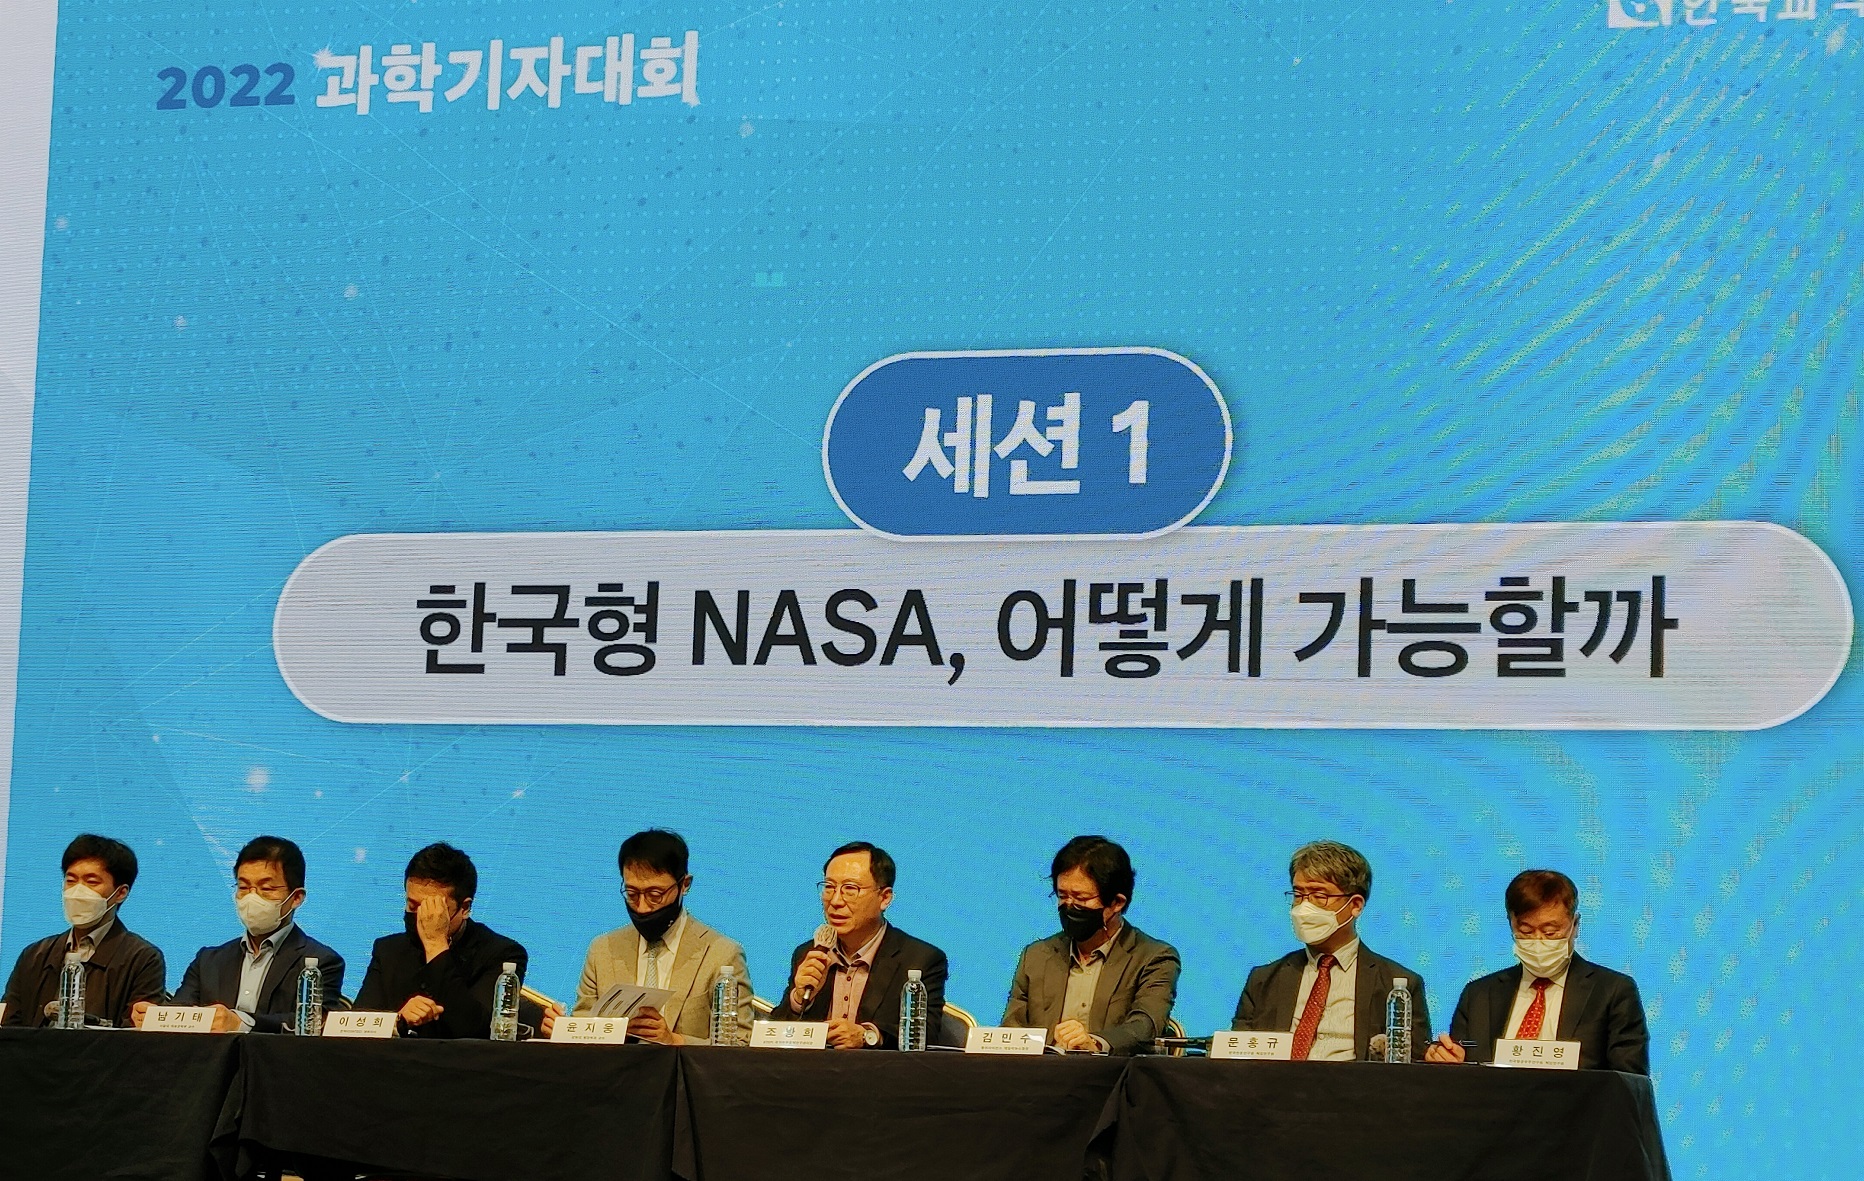 과학기자학술대회 ‘한국형 NASA’ 설립 토론회